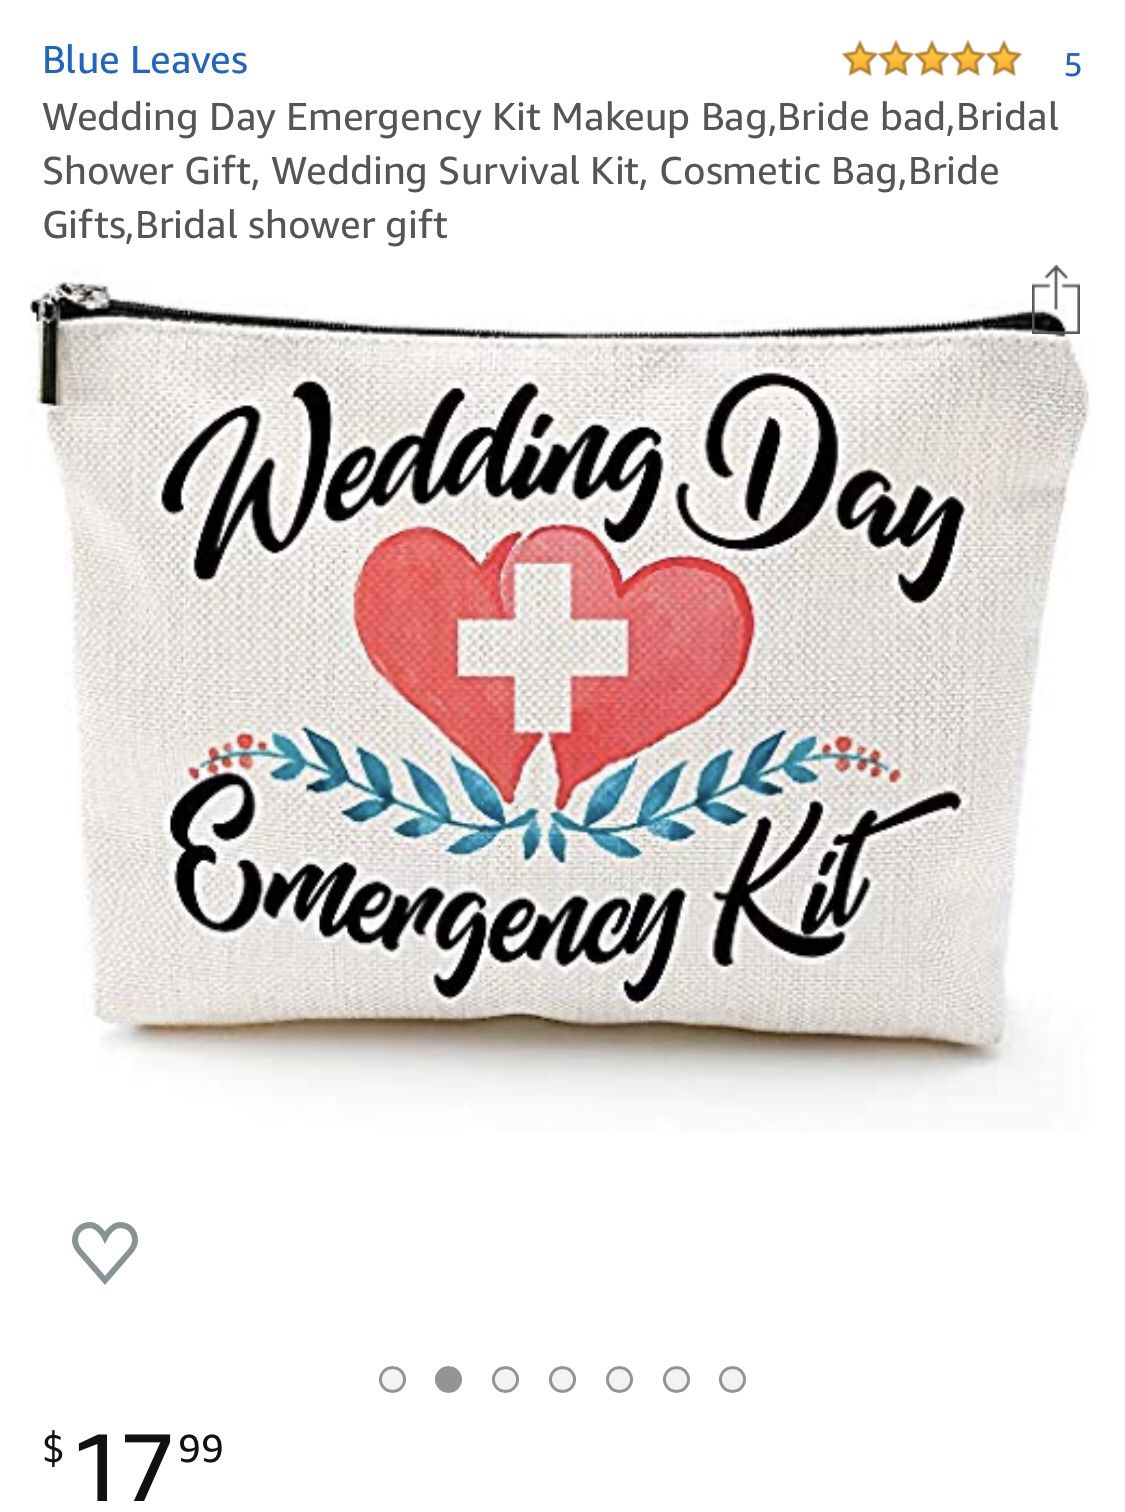 Wedding day emergency kit